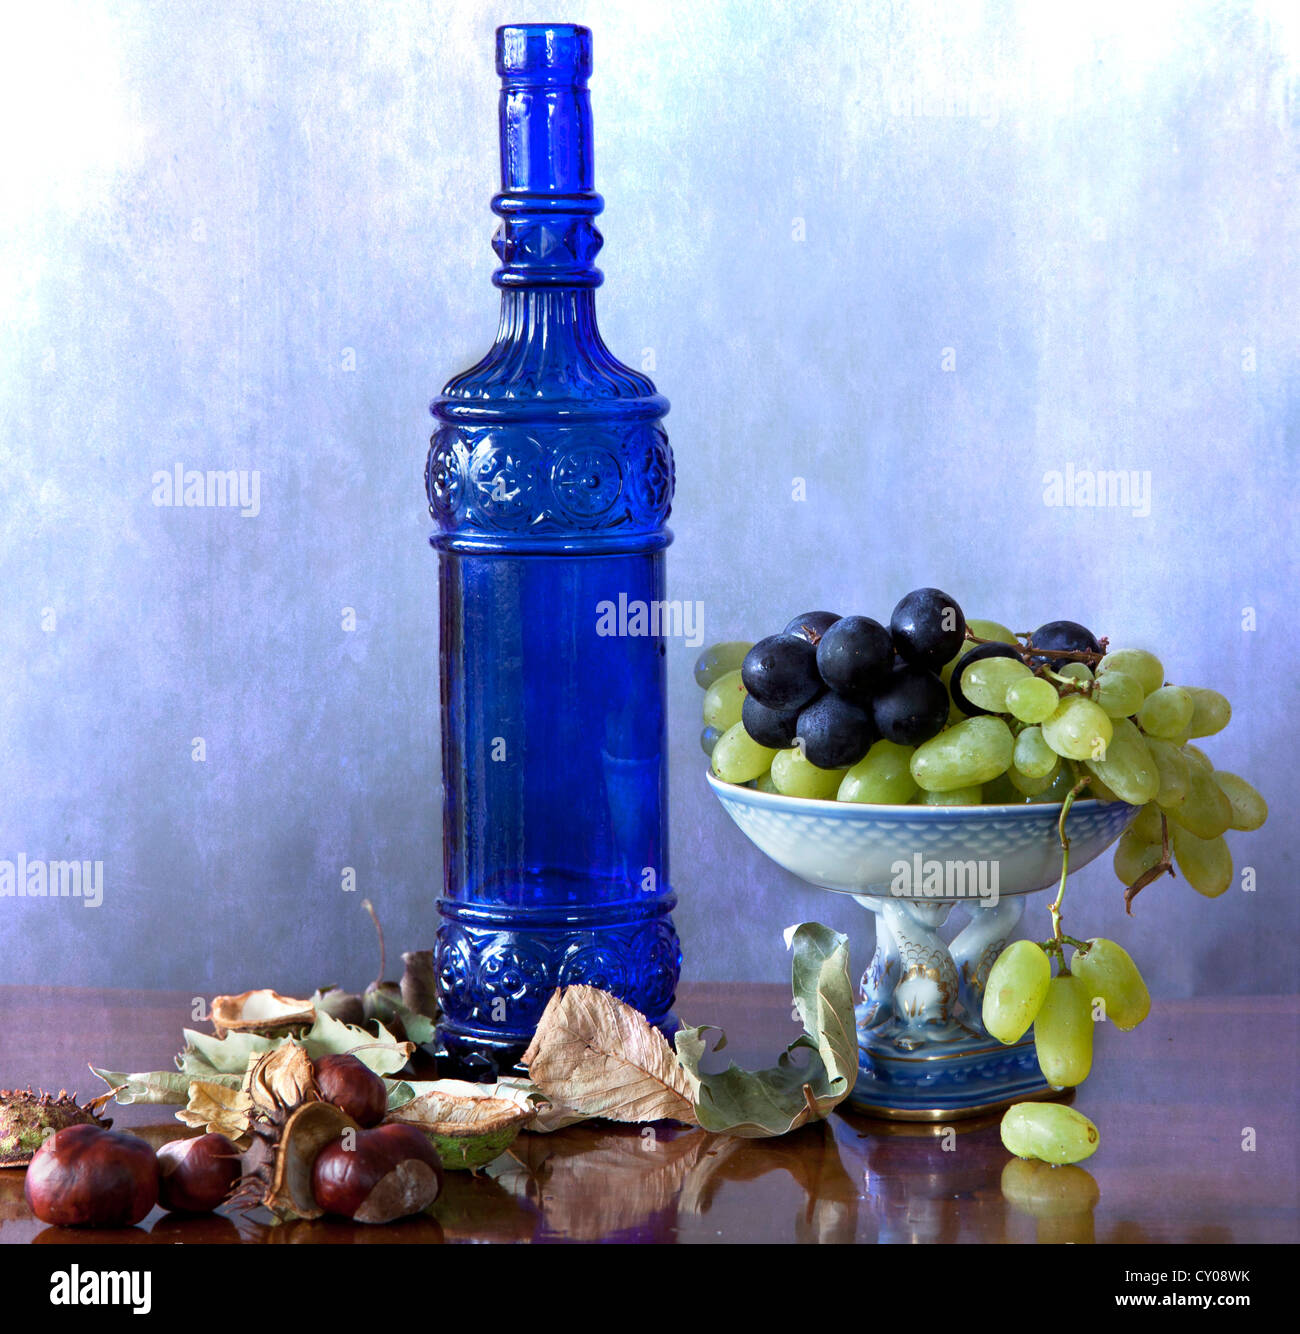 Still Life : Flacon en verre bleu avec des fruits d'automne, les raisins et châtaignes, et les feuilles sur une table polie en bois Banque D'Images